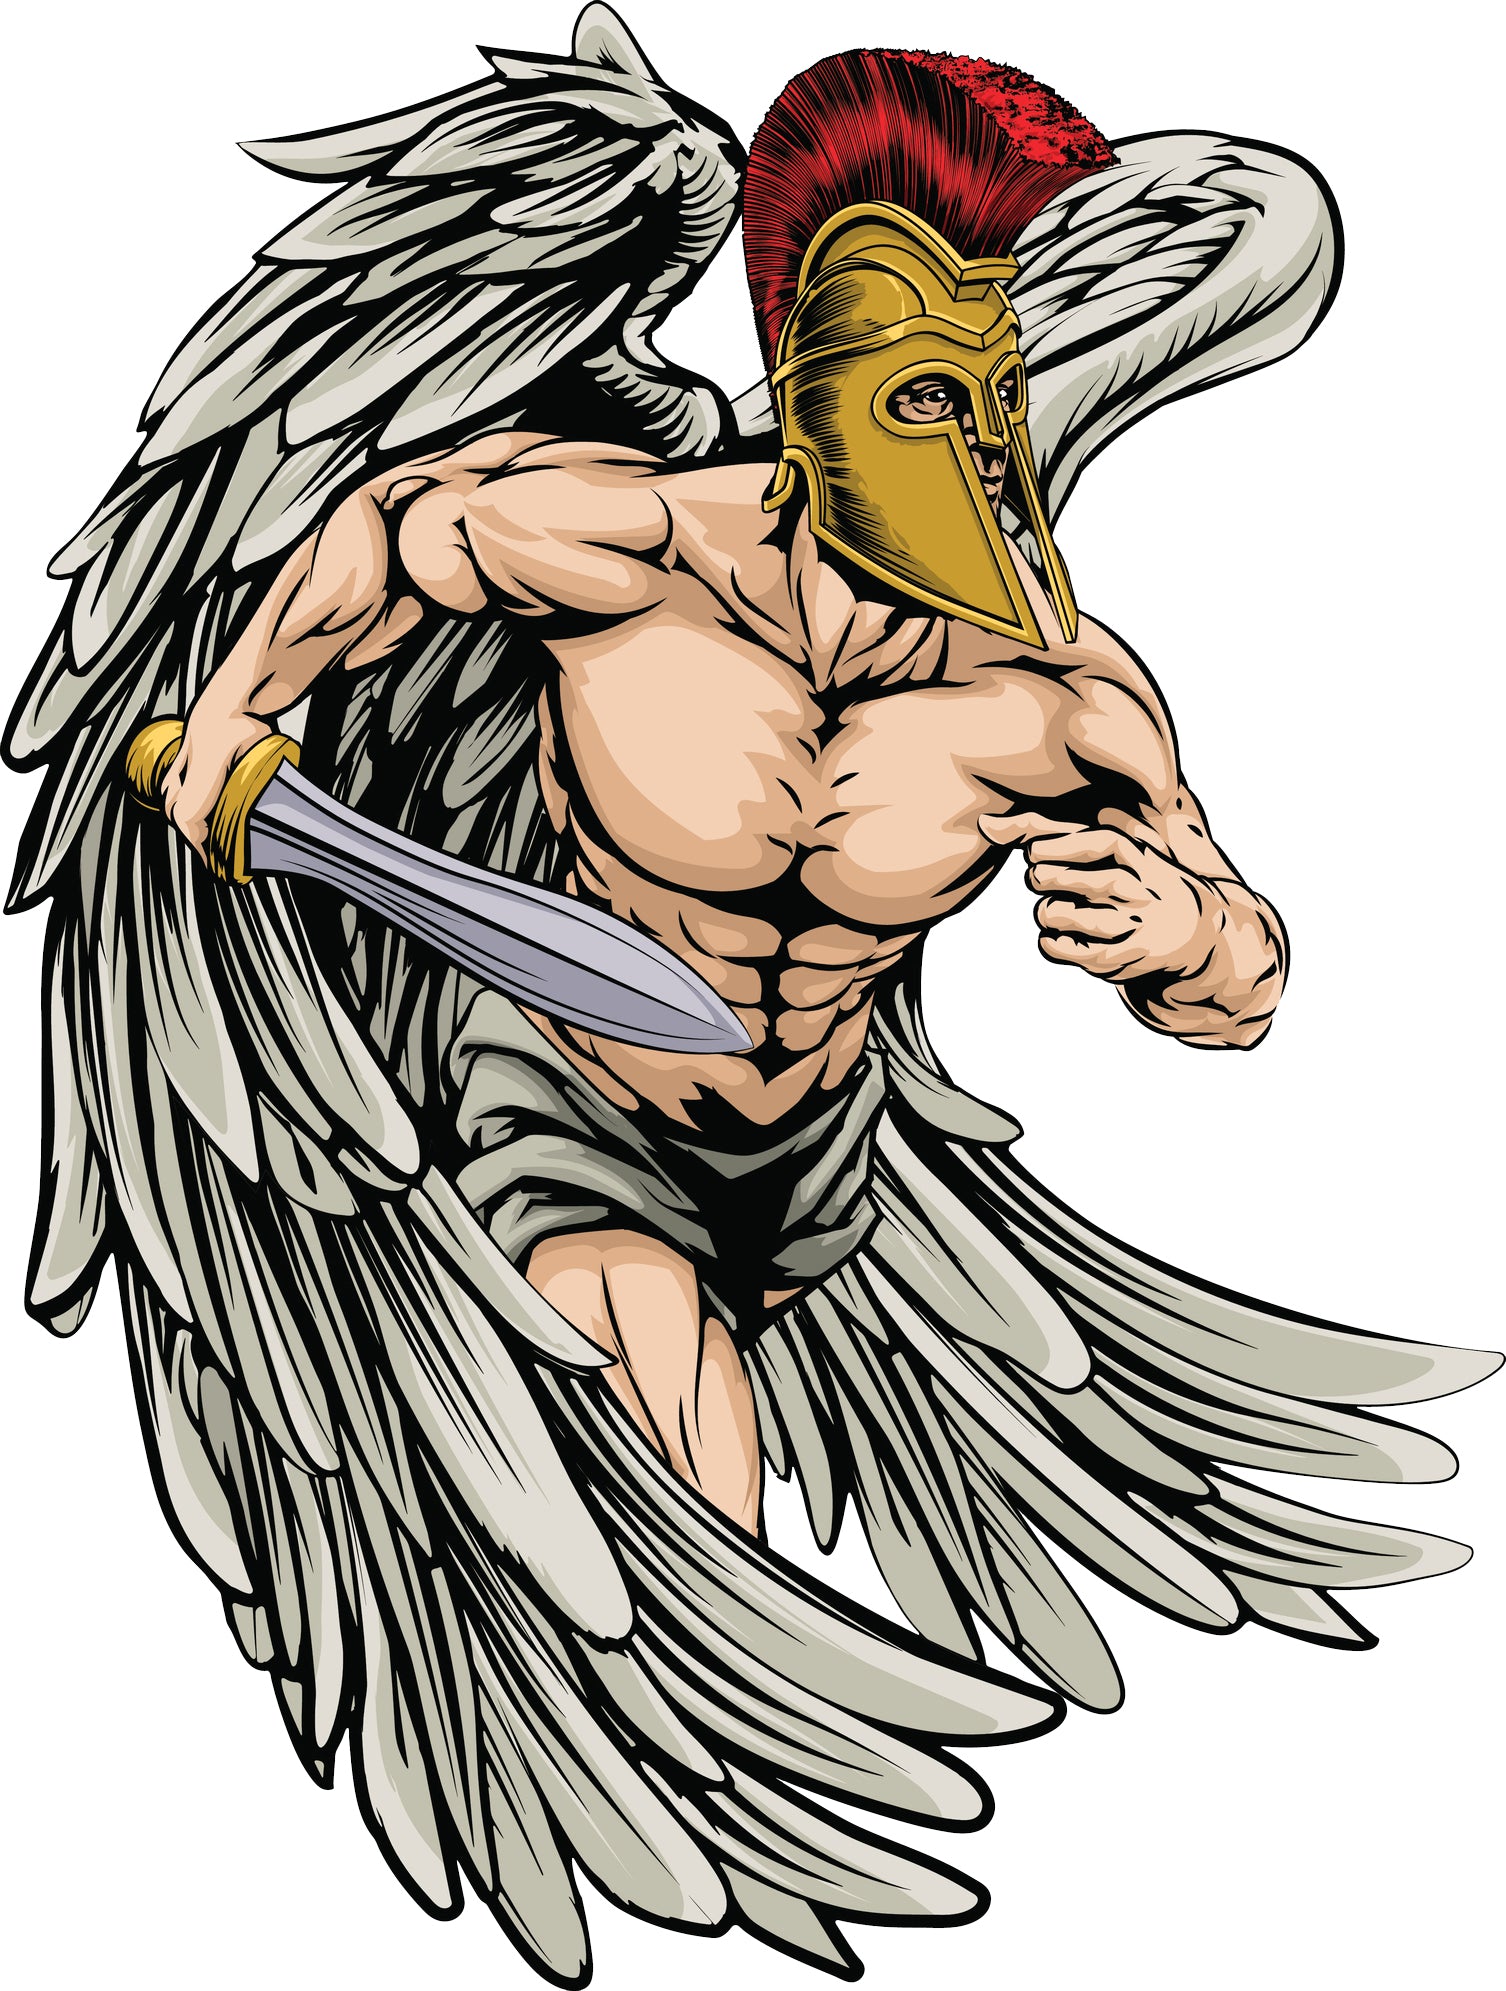 Muscular Roman Trojan Soilder with Golden Armor Cartoon Sketch #3 Vinyl Decal Sticker